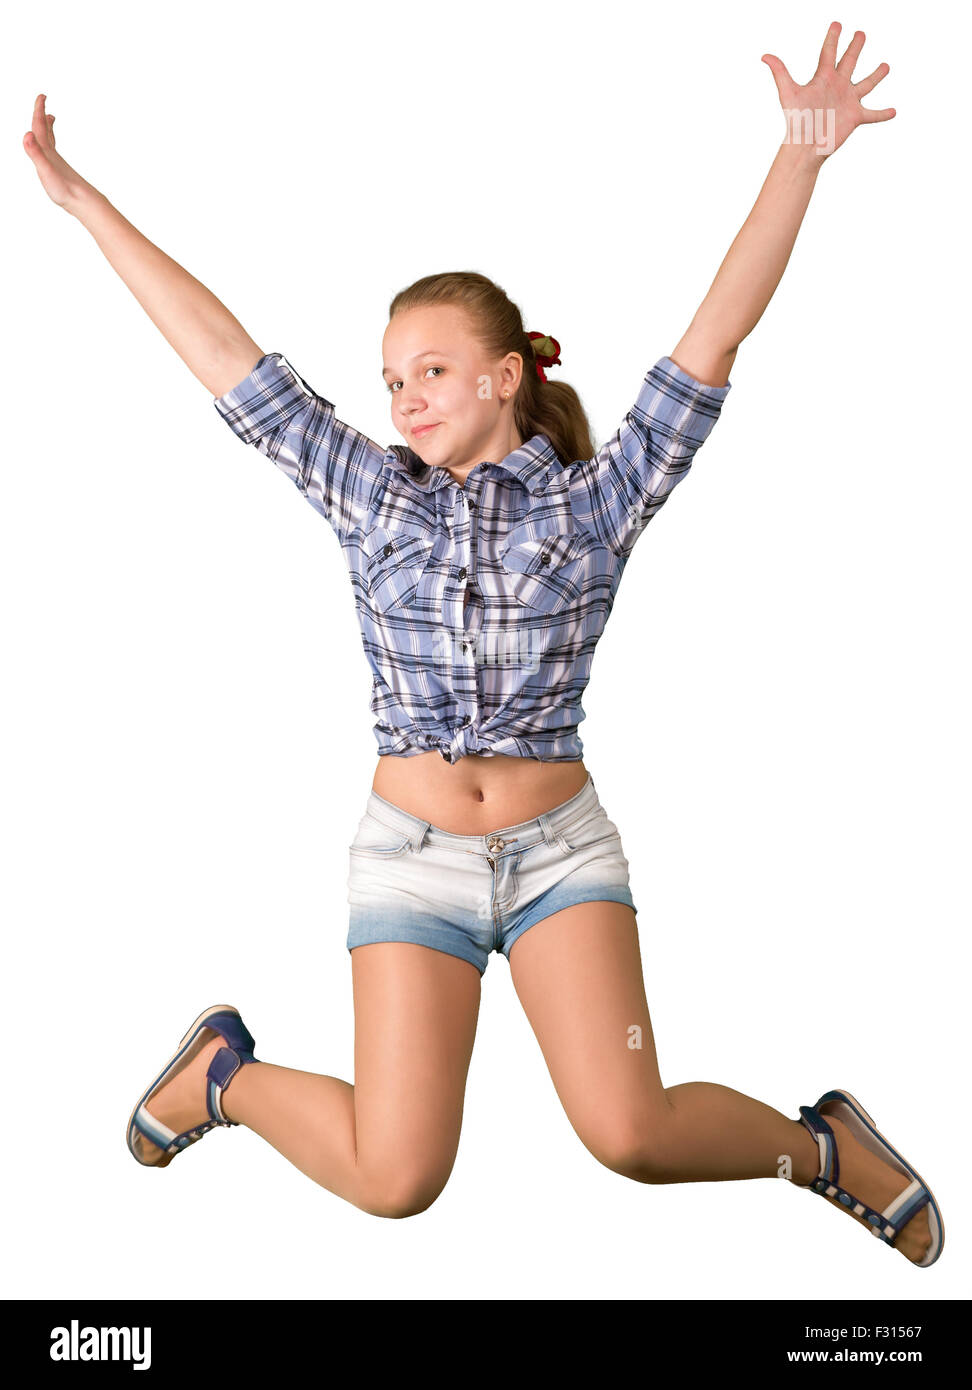 Teen Mädchen in kurzen Hosen auf weißen Backgroung springen Stockfotografie  - Alamy